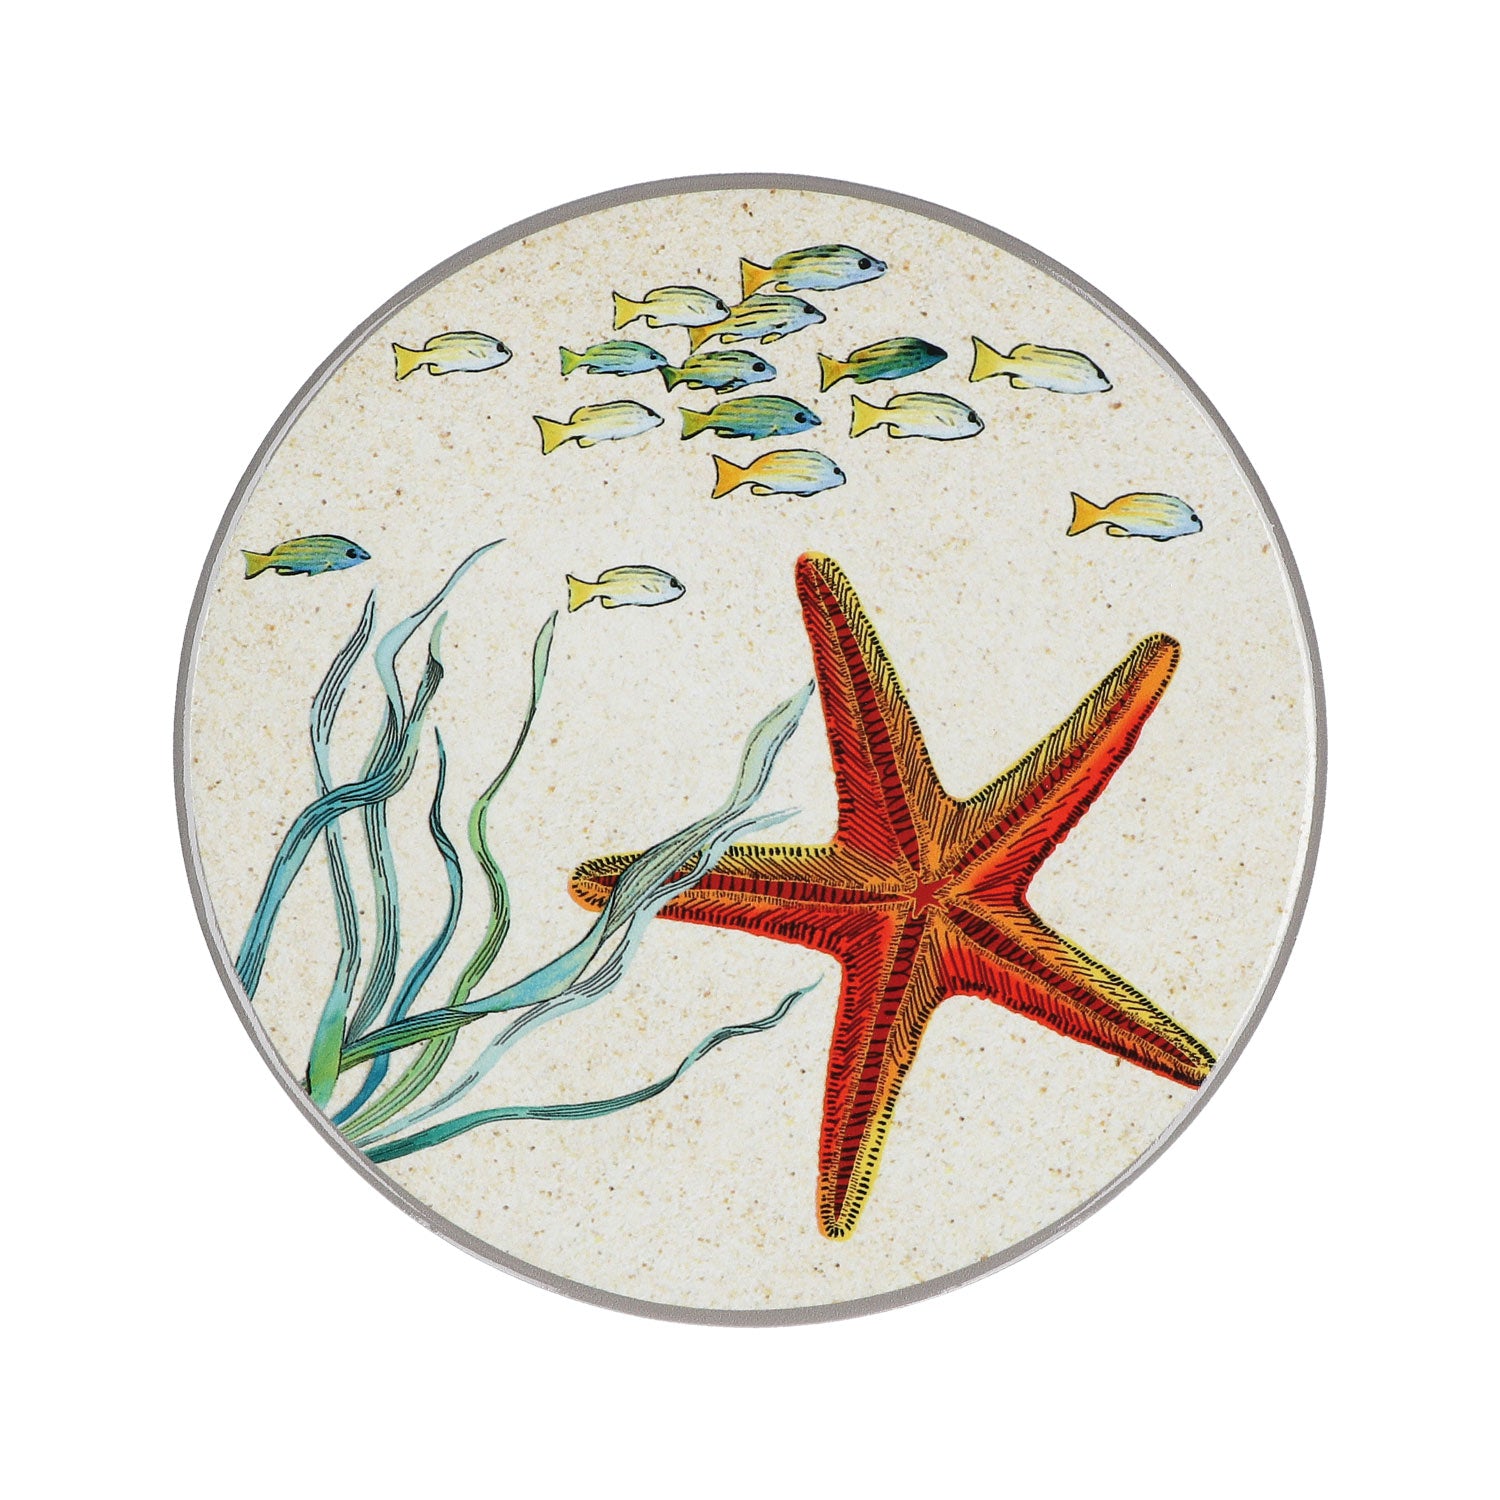 Sottopentola tondo in ceramica decorata con tema stella marina, fondo isolante in sughero. Dimensioni : diametro cm. 20 Lavare a mano. In negozio e online su tuttochic.it